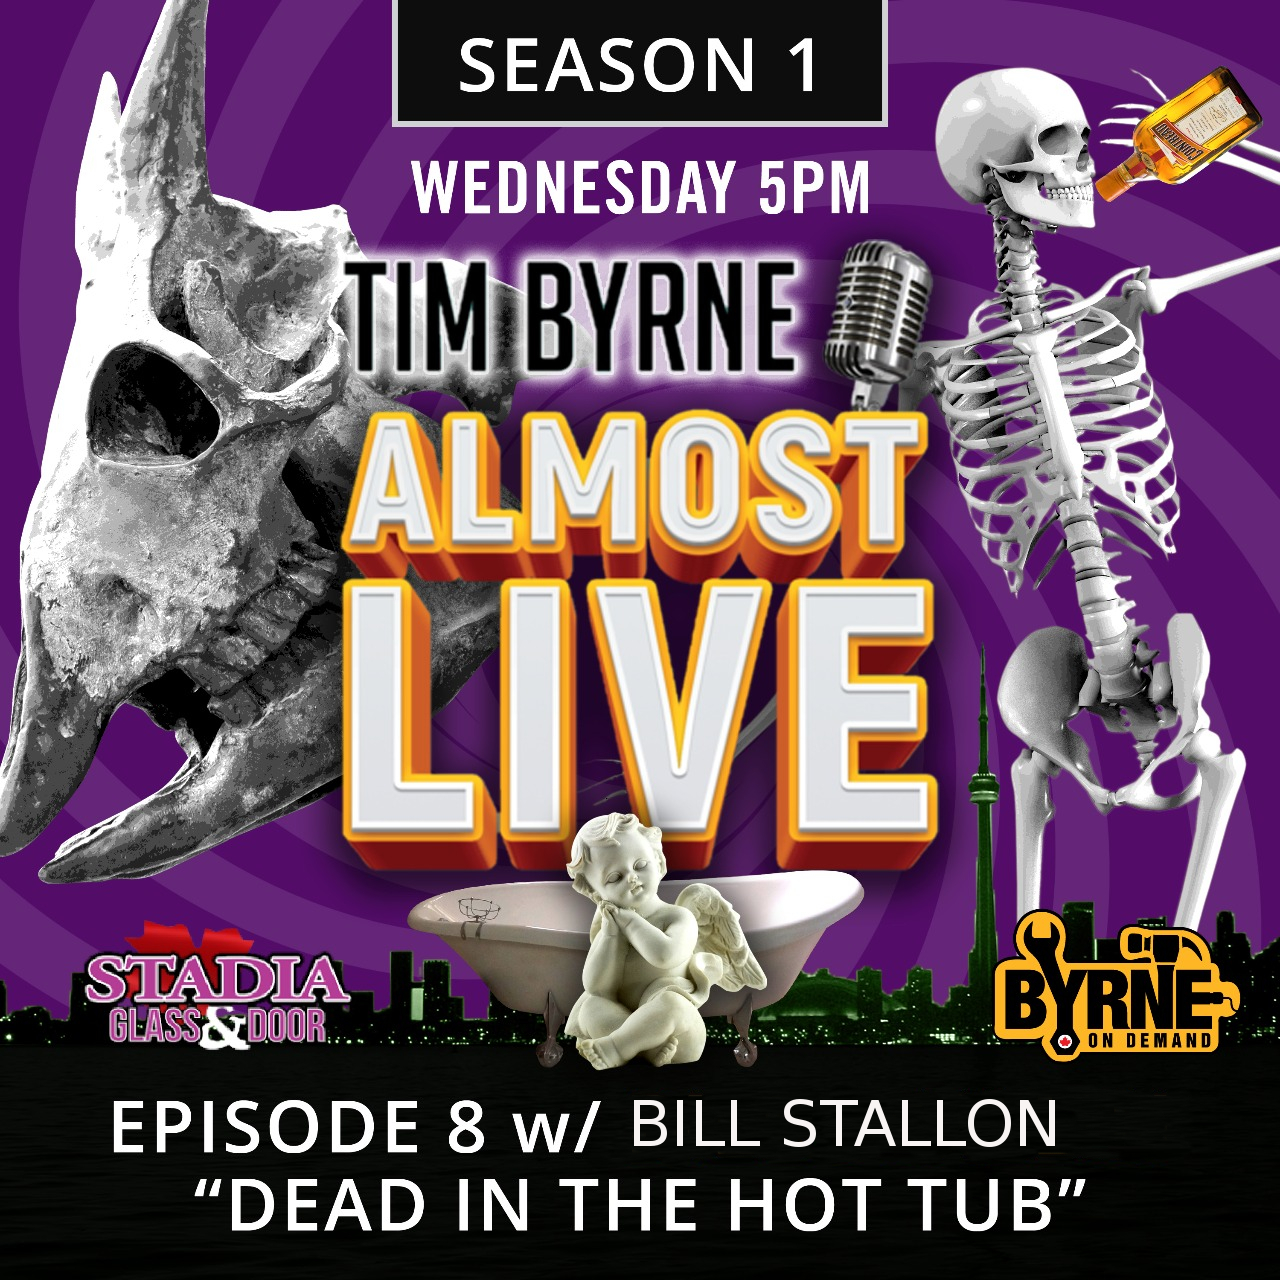 Episode 8 – Dead in the hot tub w/ Bill Stallon